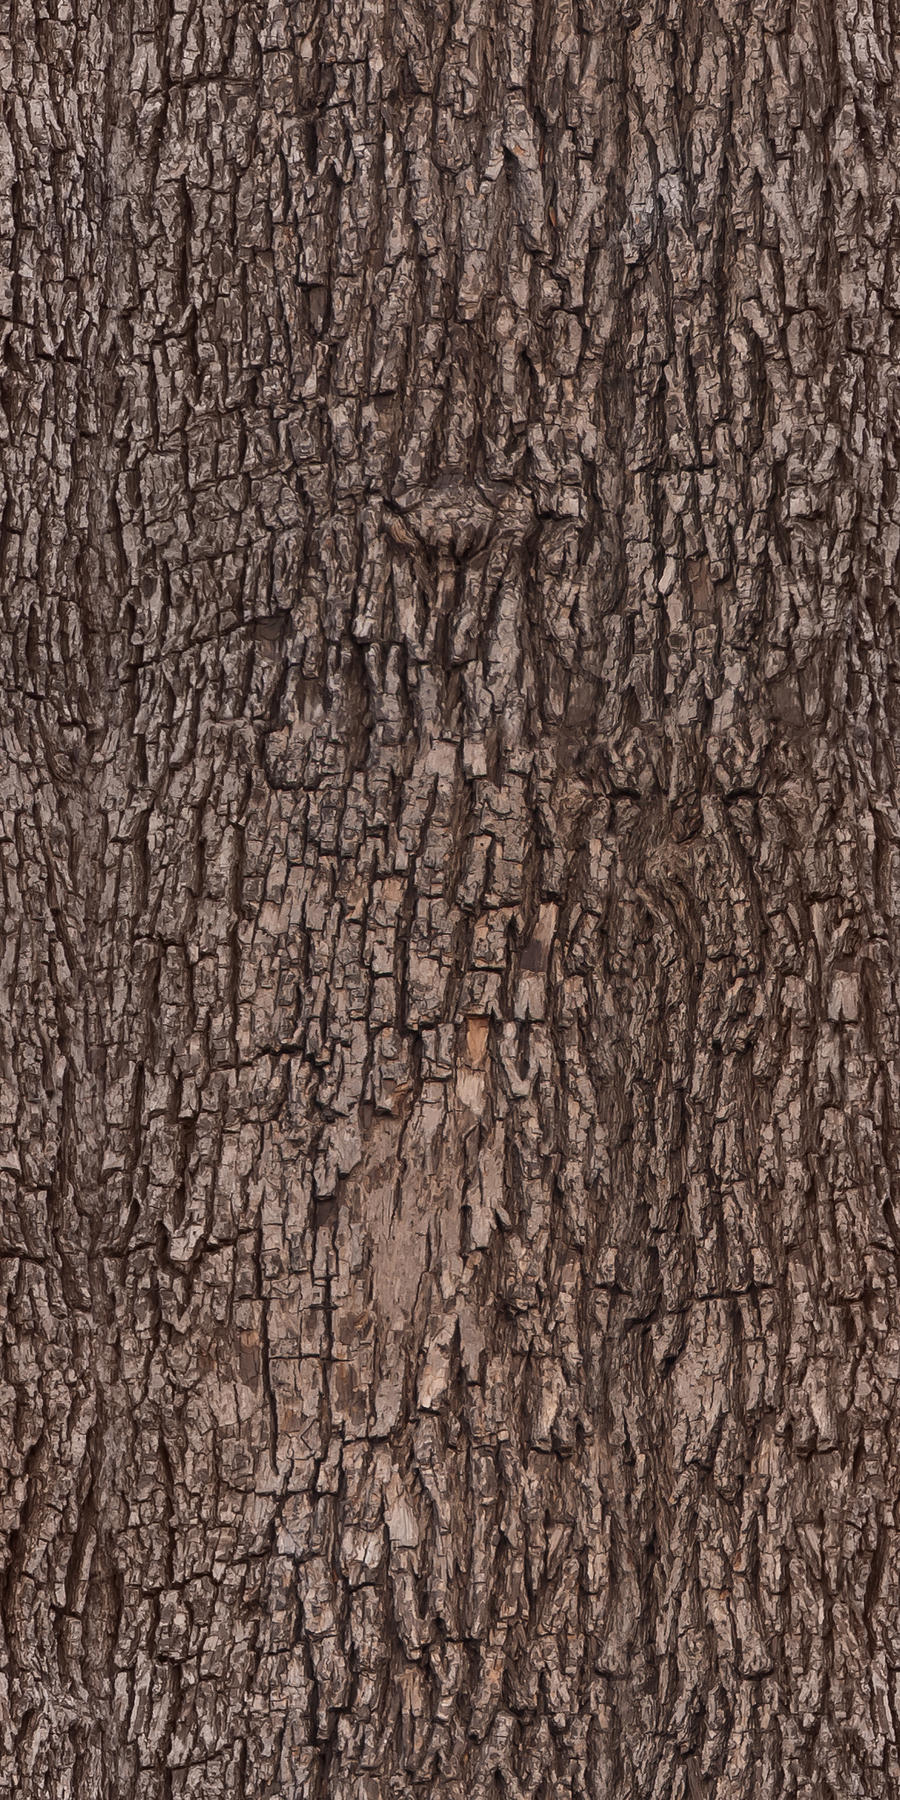 Tree bark - texture, pattern